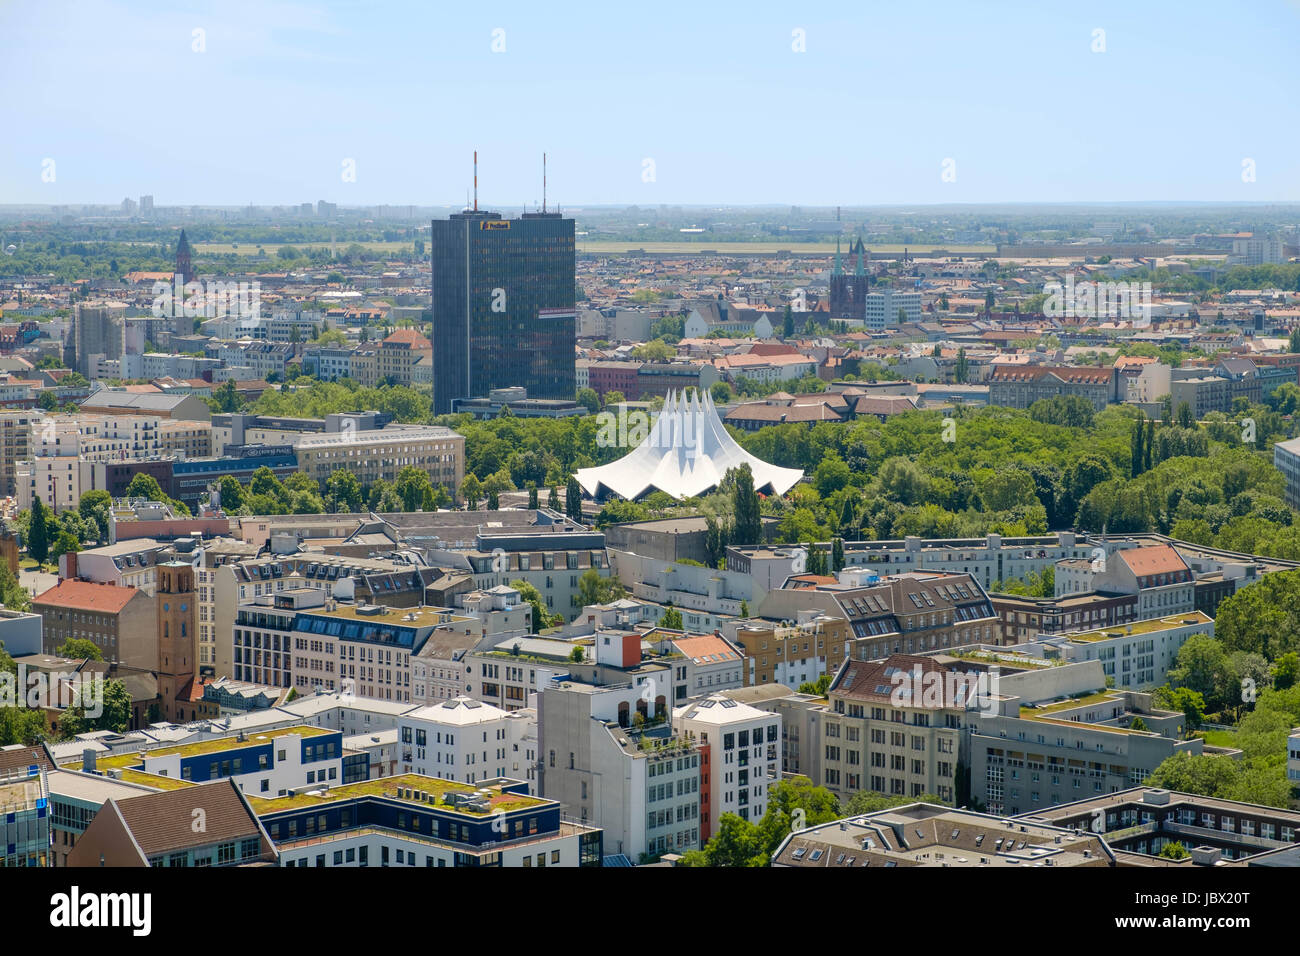 Berlin, Allemagne - le 9 juin 2017 : Berlin skyline plus Kreuzerbg ville montrant le toit de l'emplacement de l'événement Tempodrom Berlin, Allemagne. Banque D'Images